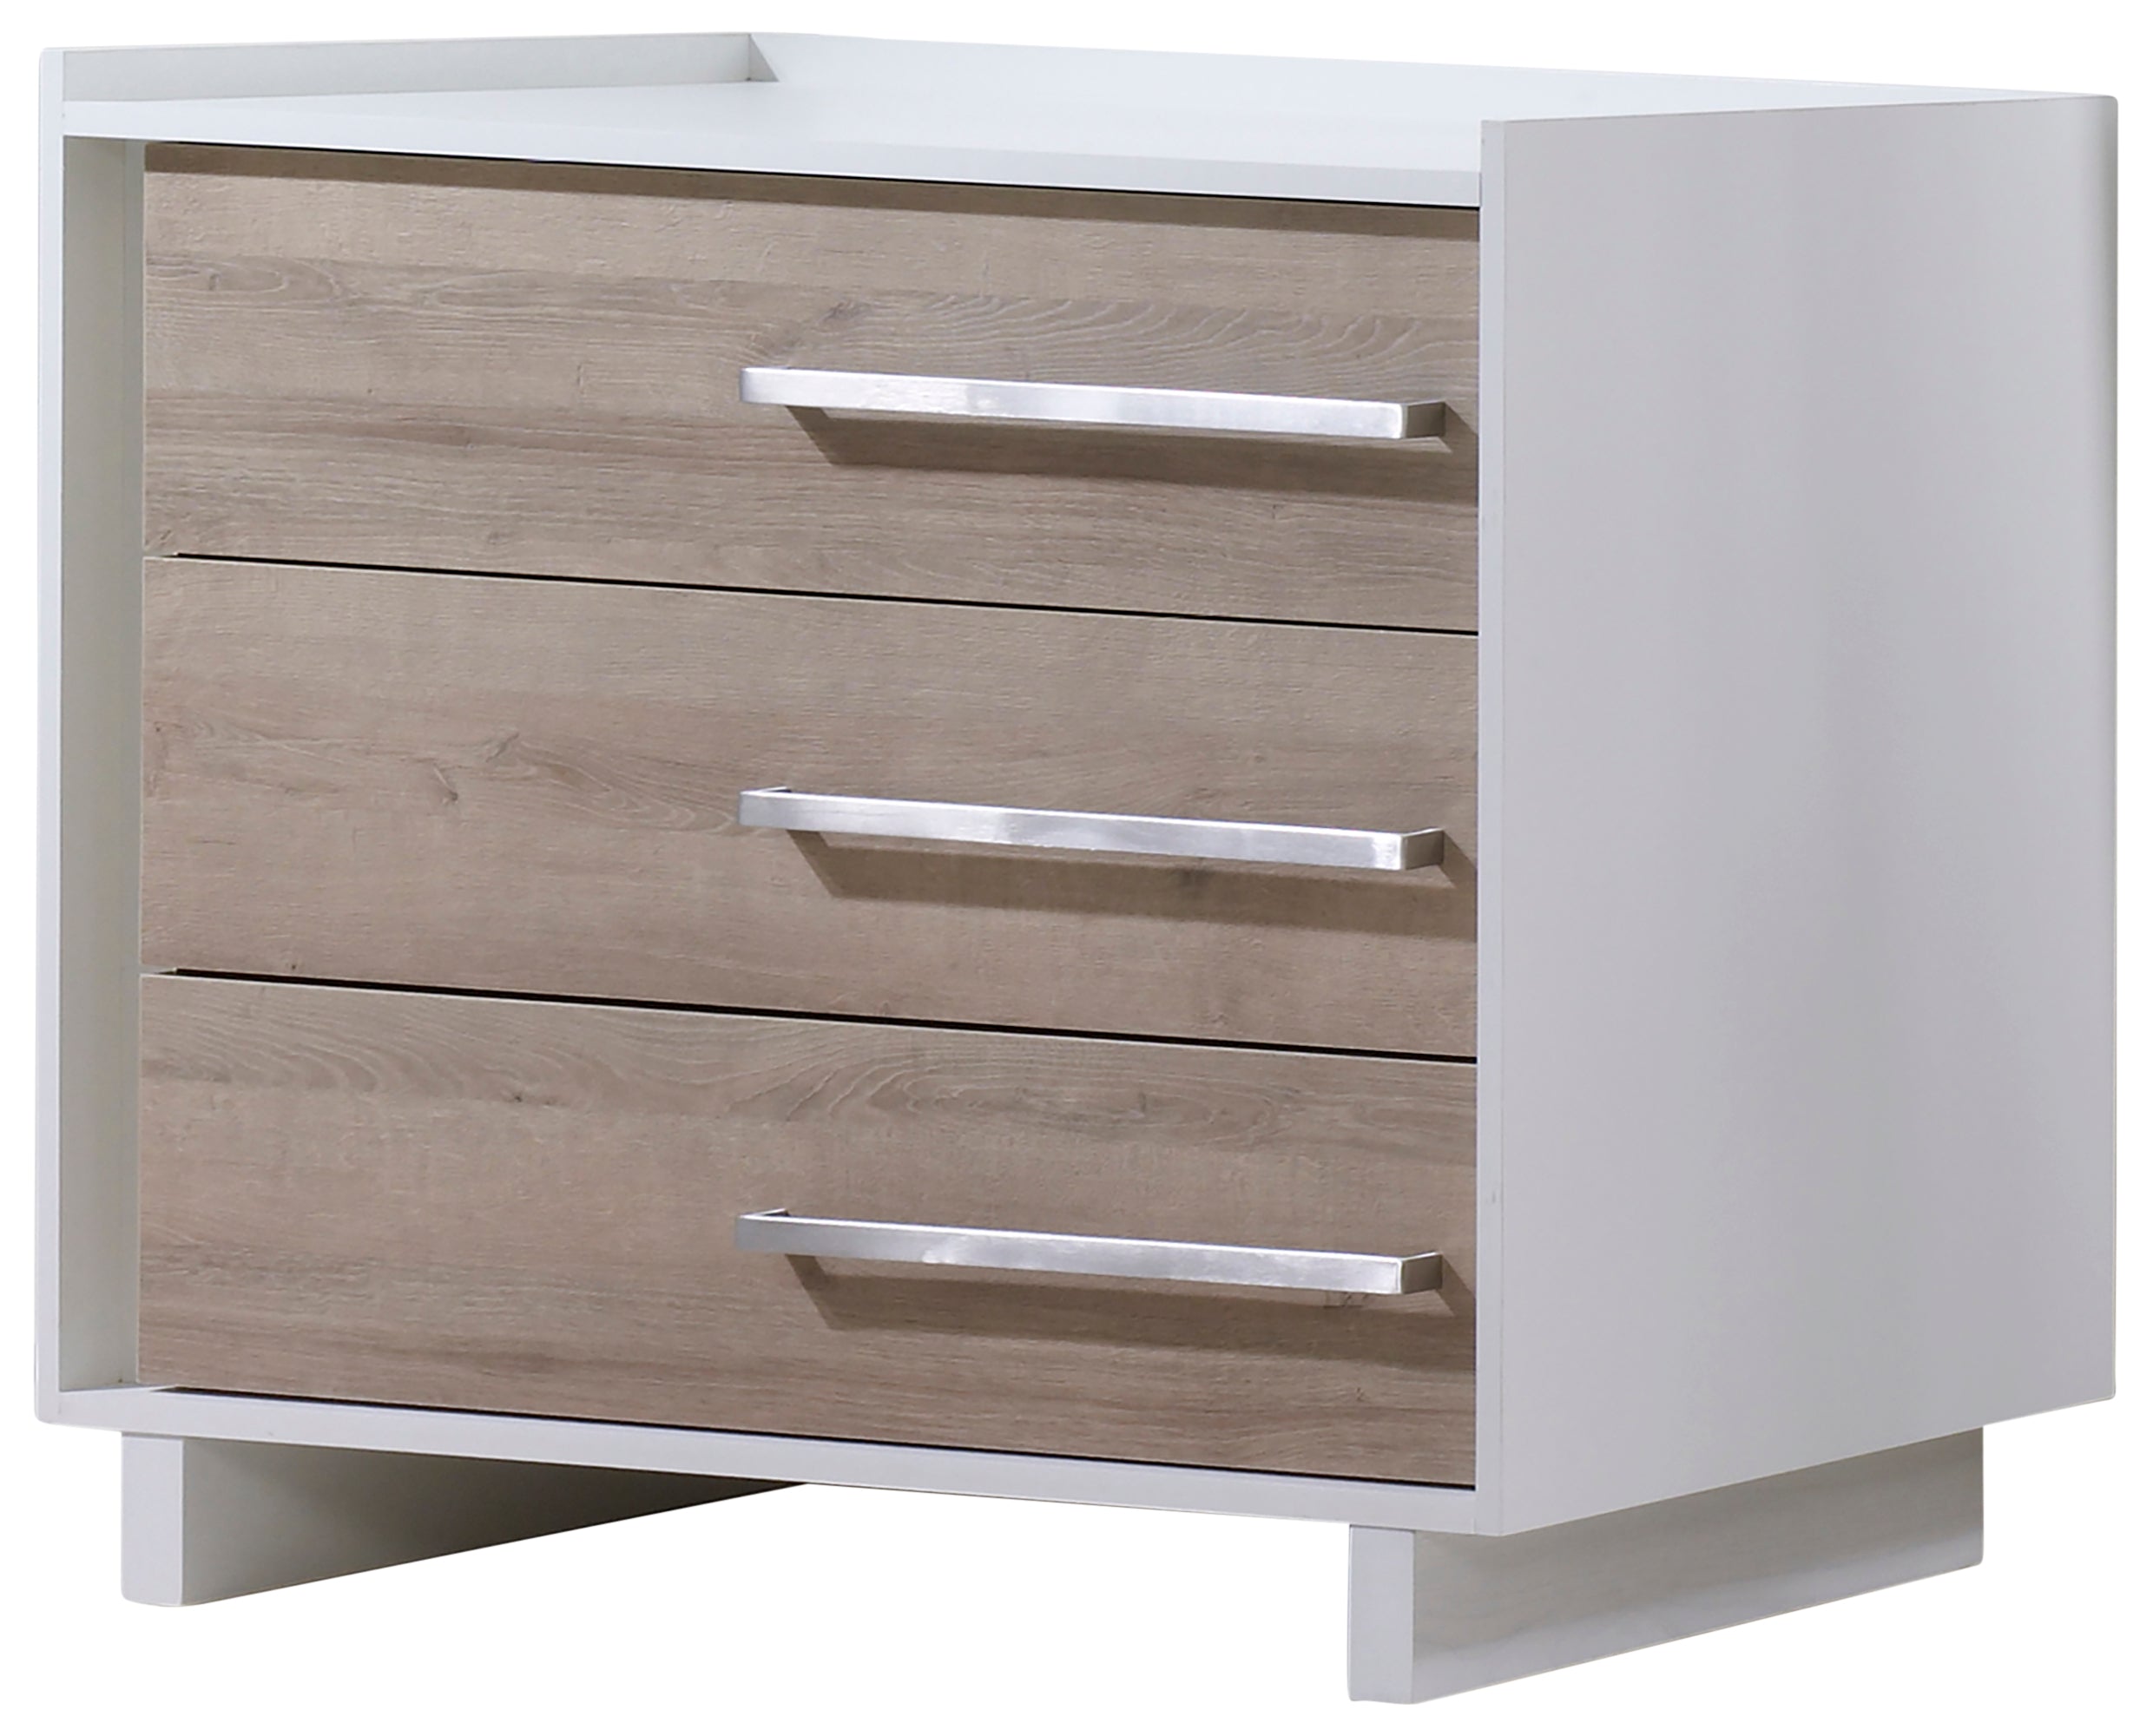 White Laminate & Natural Laminate with White Wood | Urban Crib & Dresser Set | Valley Ridge Furniture